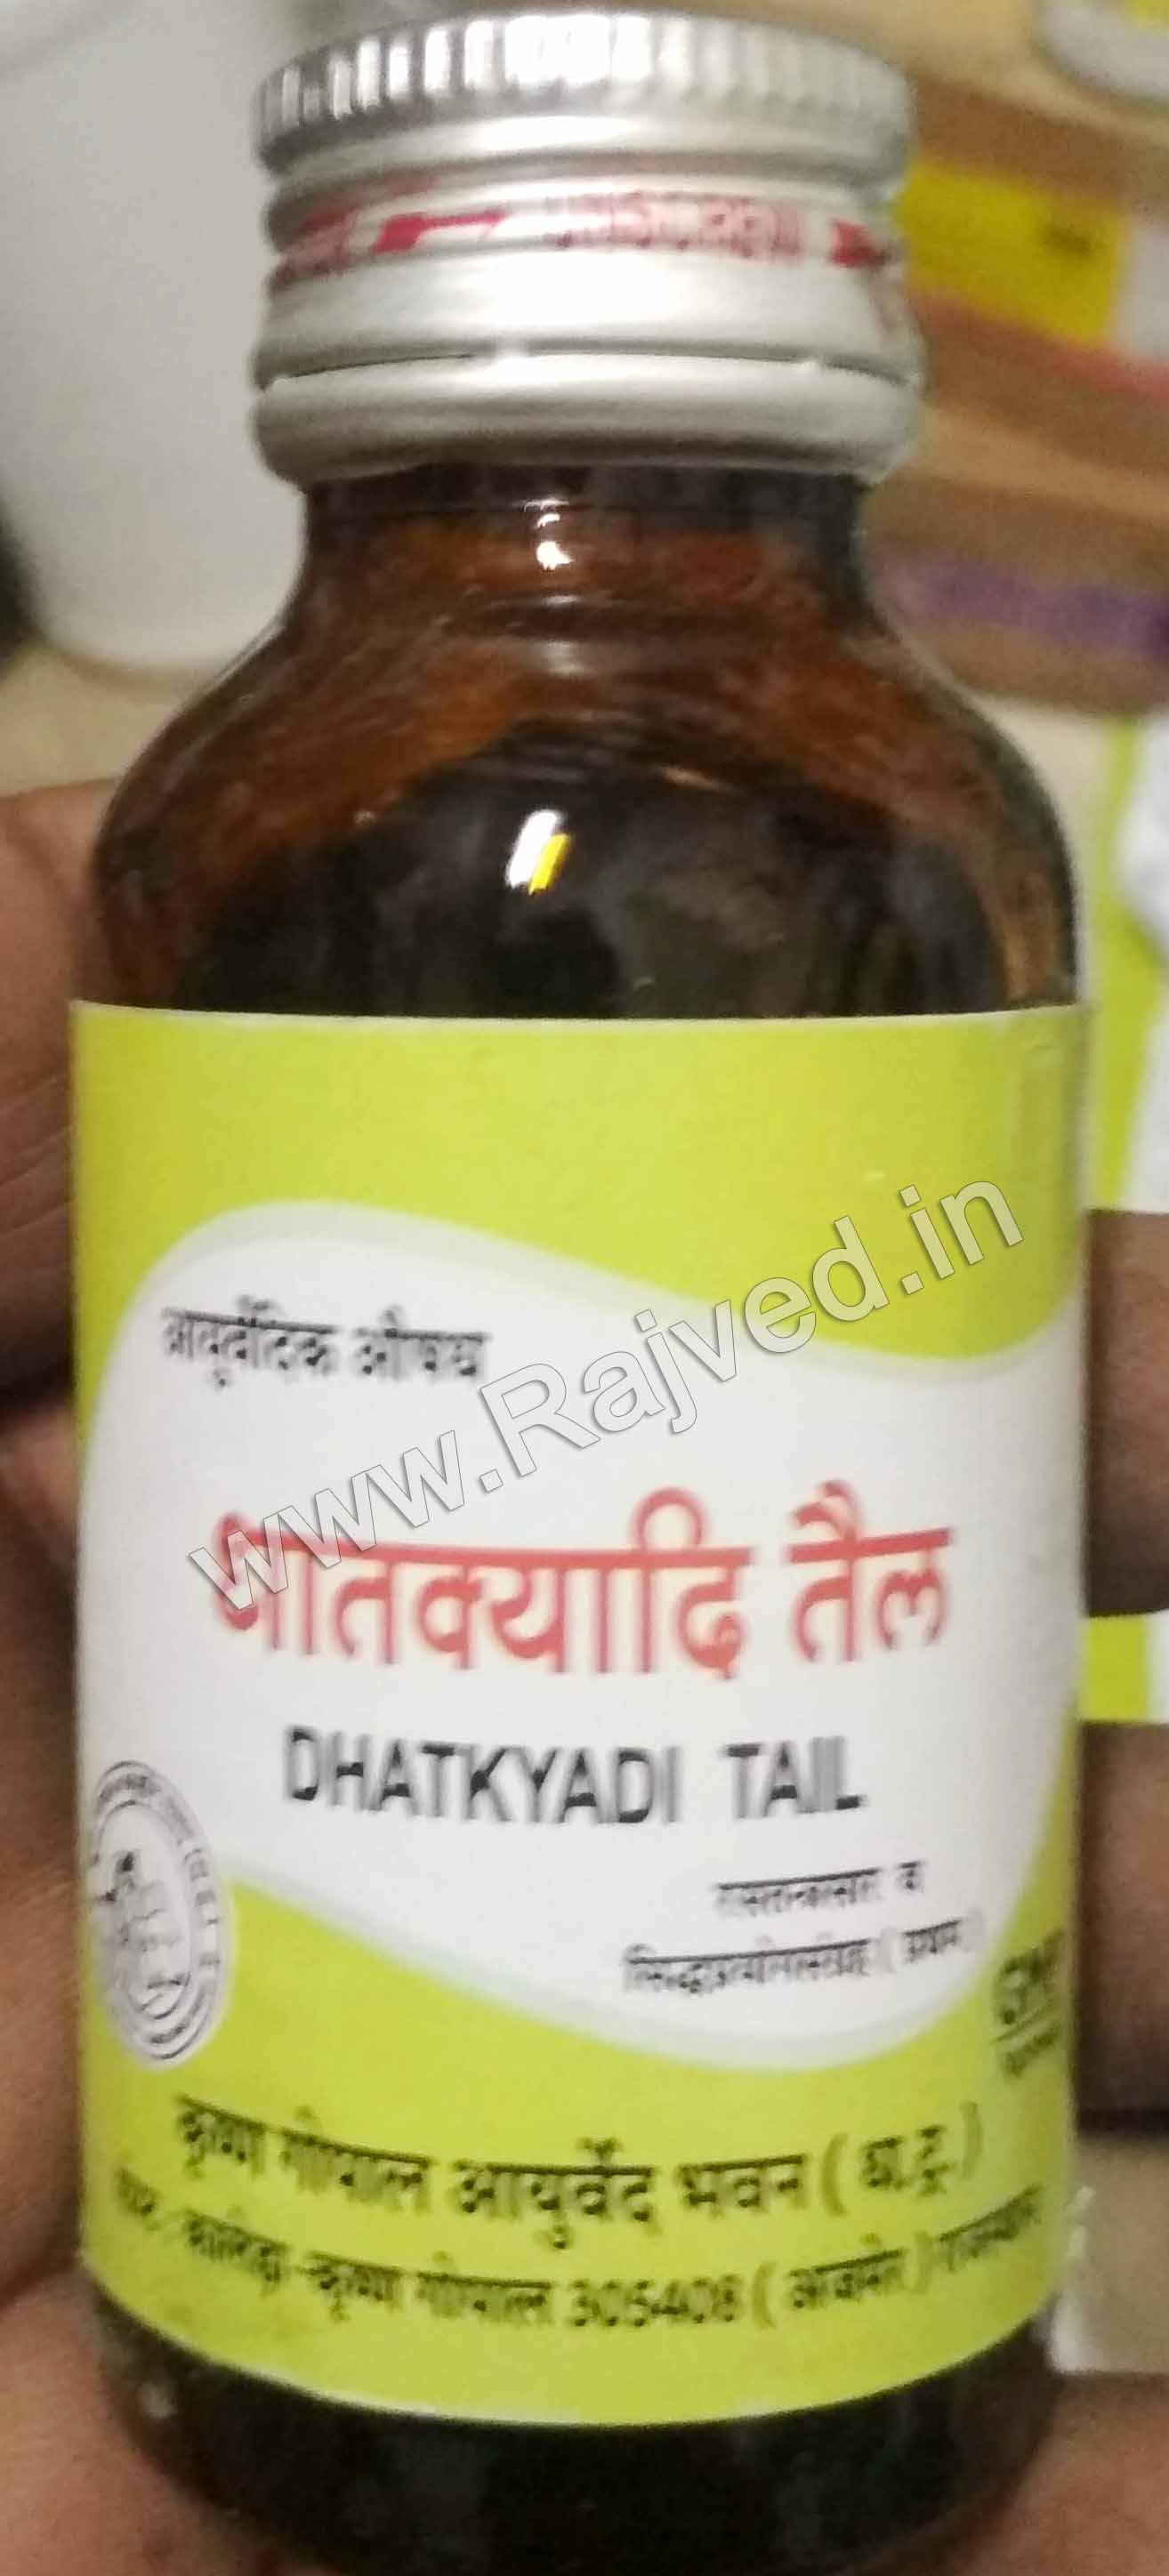 dhatkyadi tail 100 ml krishna gopal ayurved bhavan